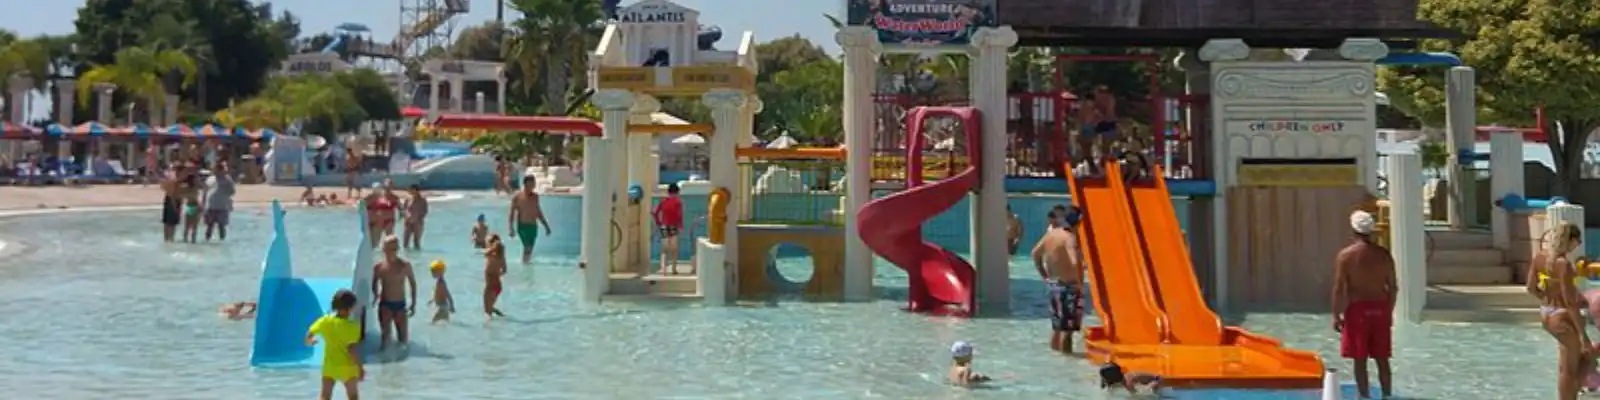 Theme parks, Eco Park, Amusement Park, Water park design